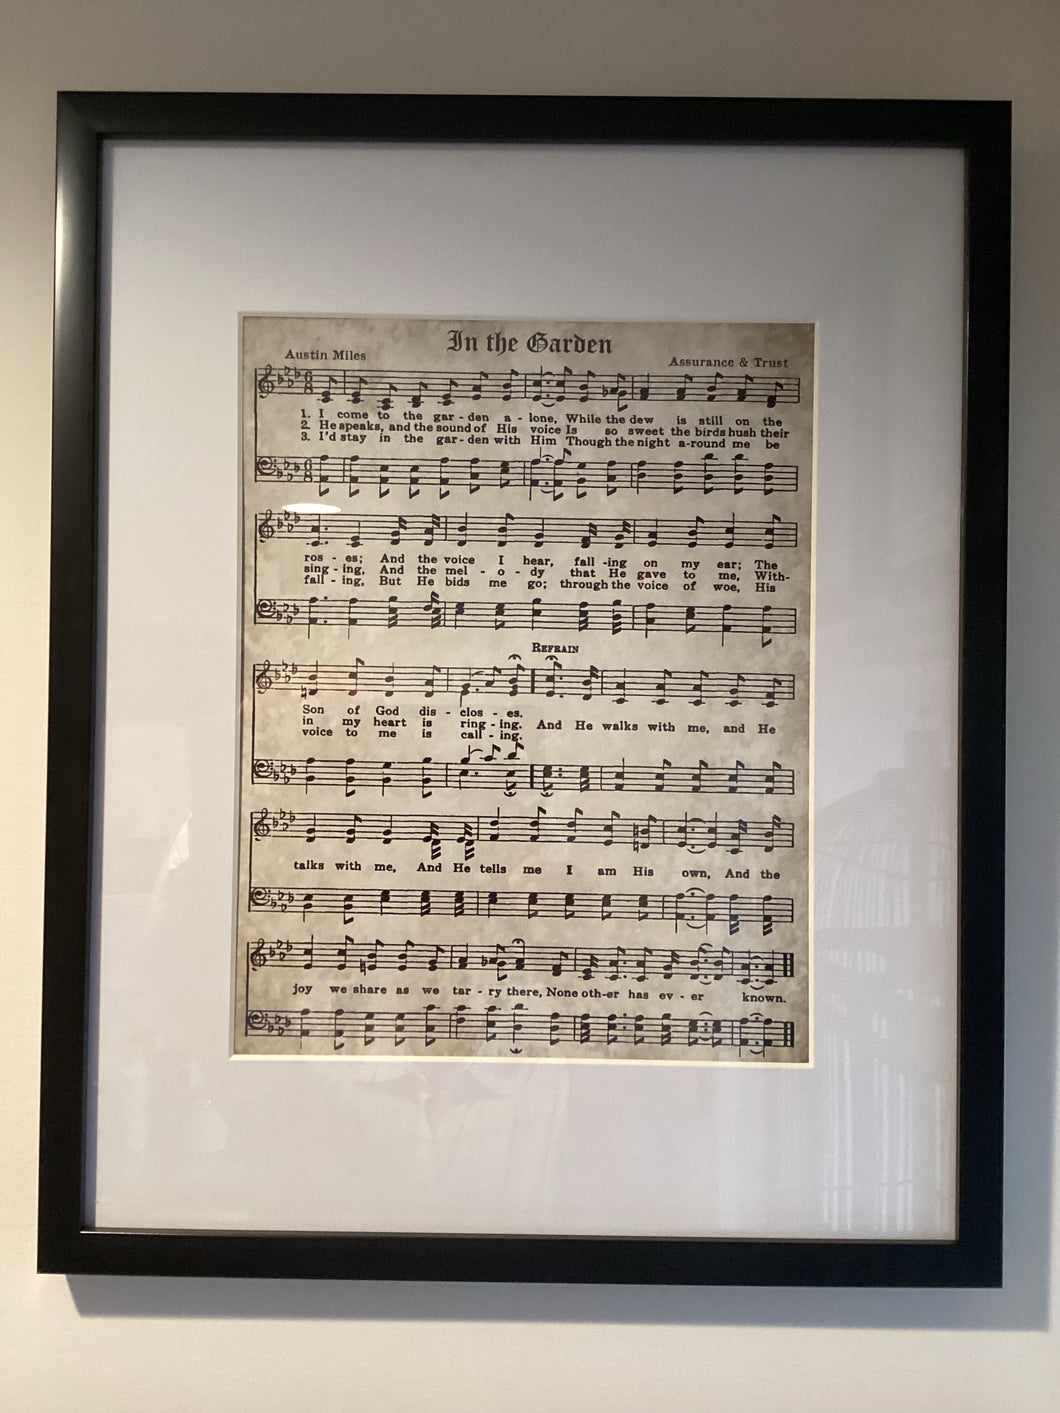 In the garden - sheet music (framed)